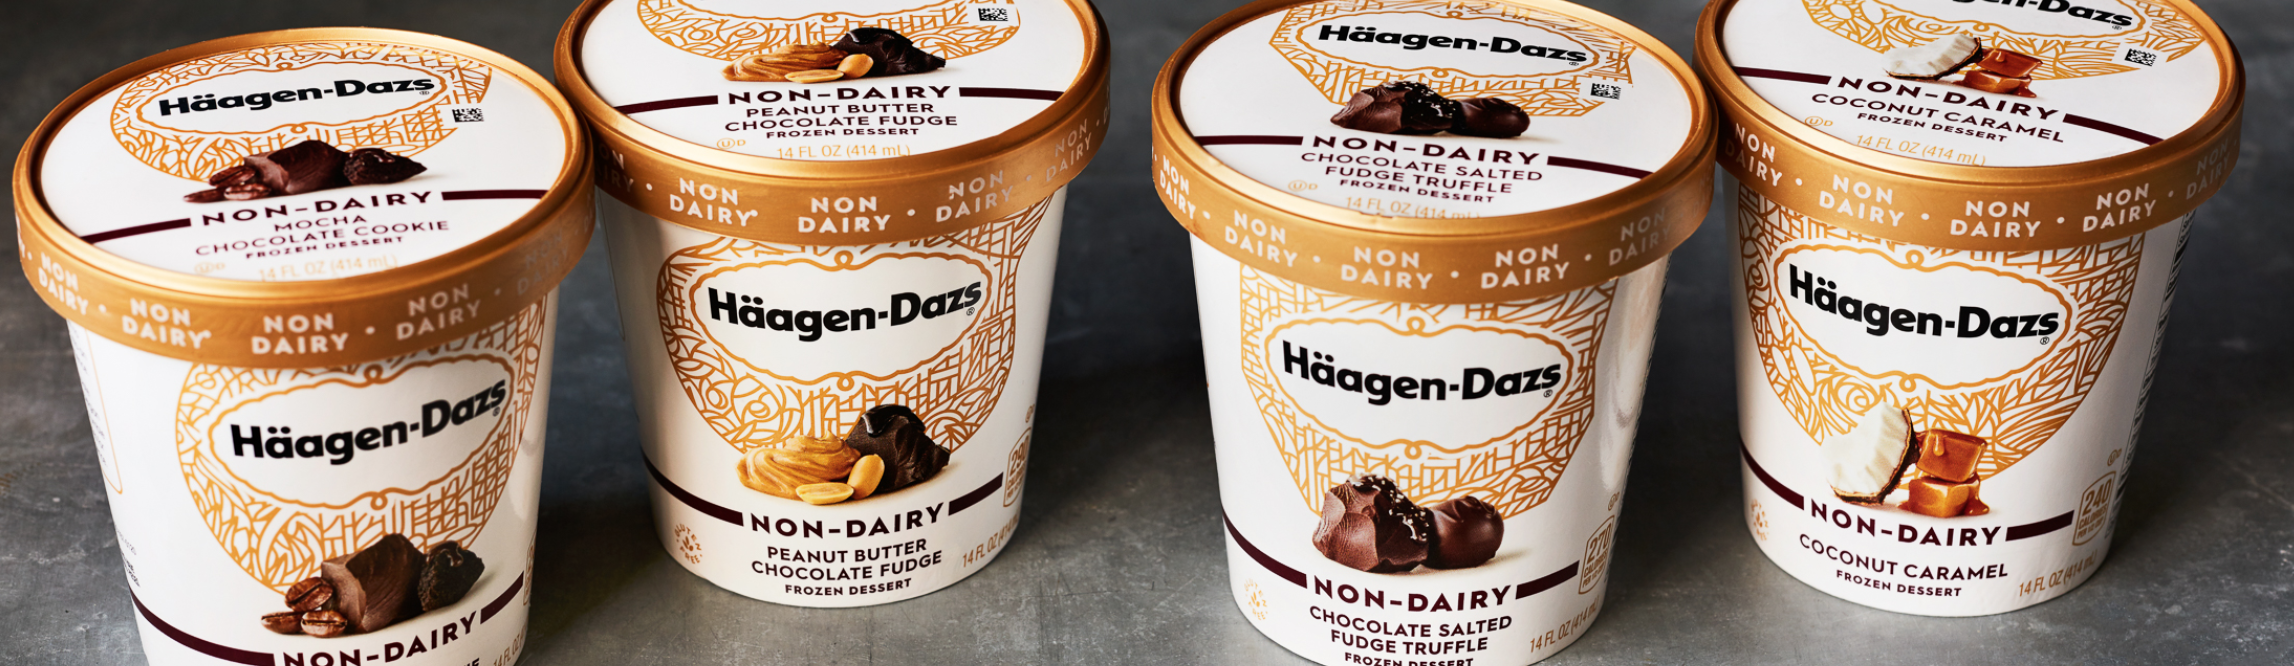 Haagen-Dazs Vegan ice cream line-up